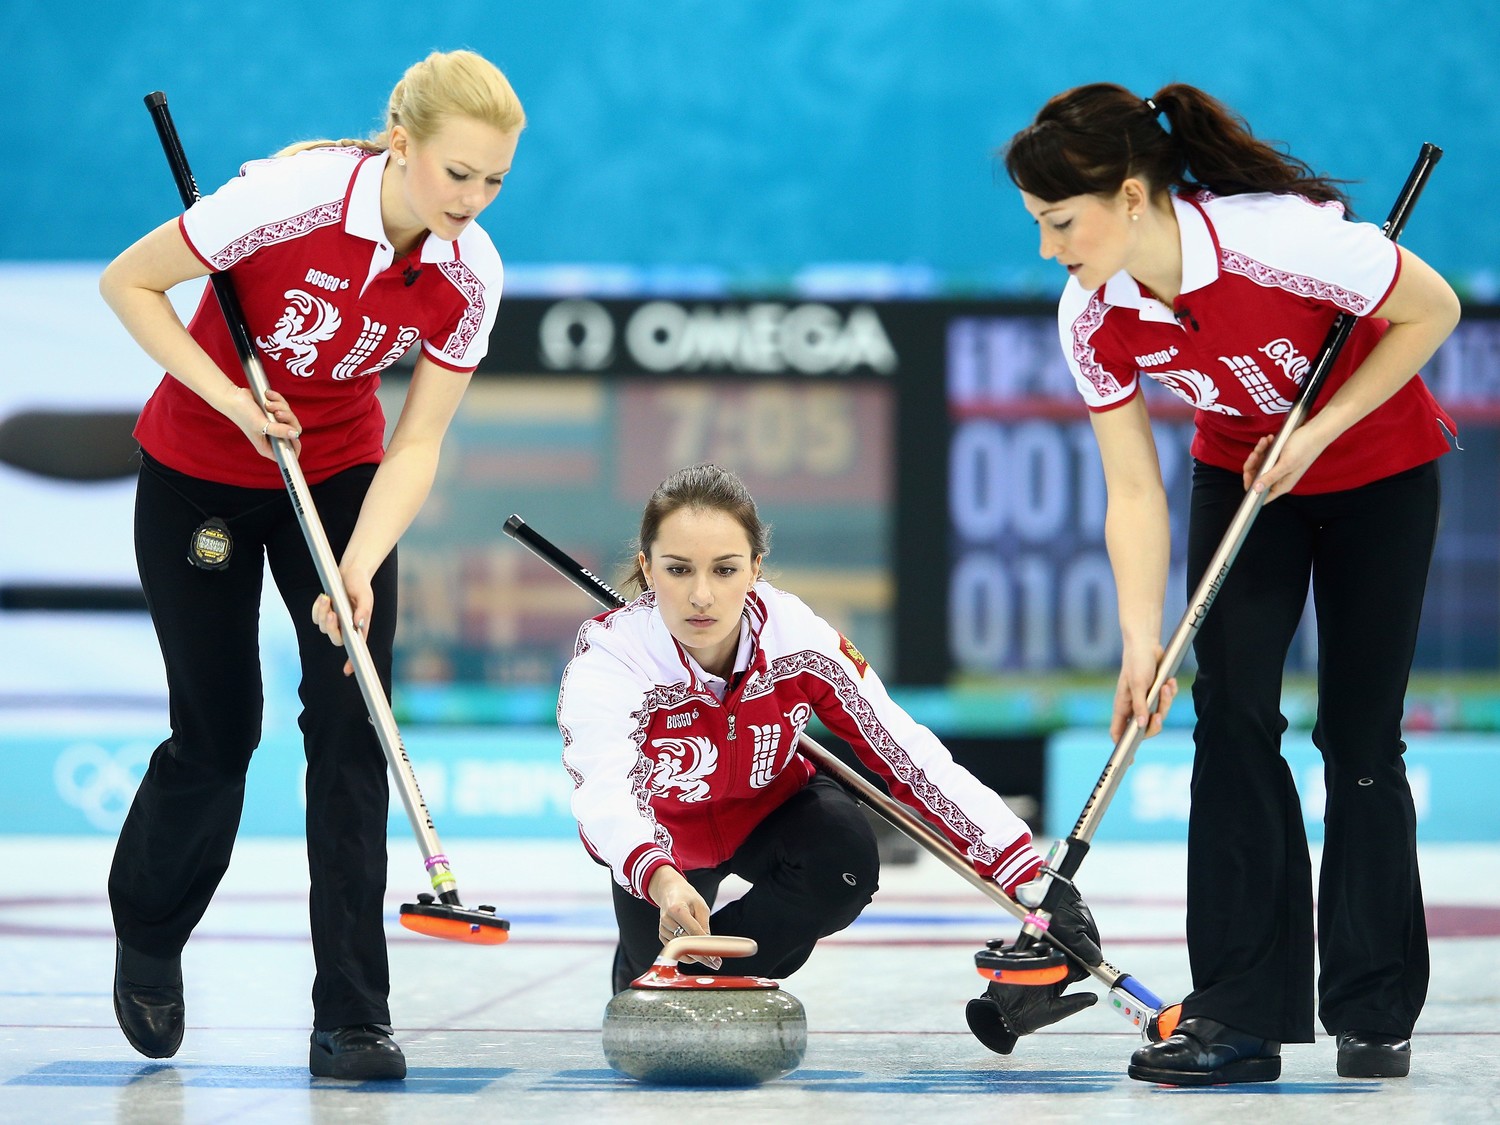 Кёрлинг (англ. curling) - это олимпийский командный вид спорта, в котором к...